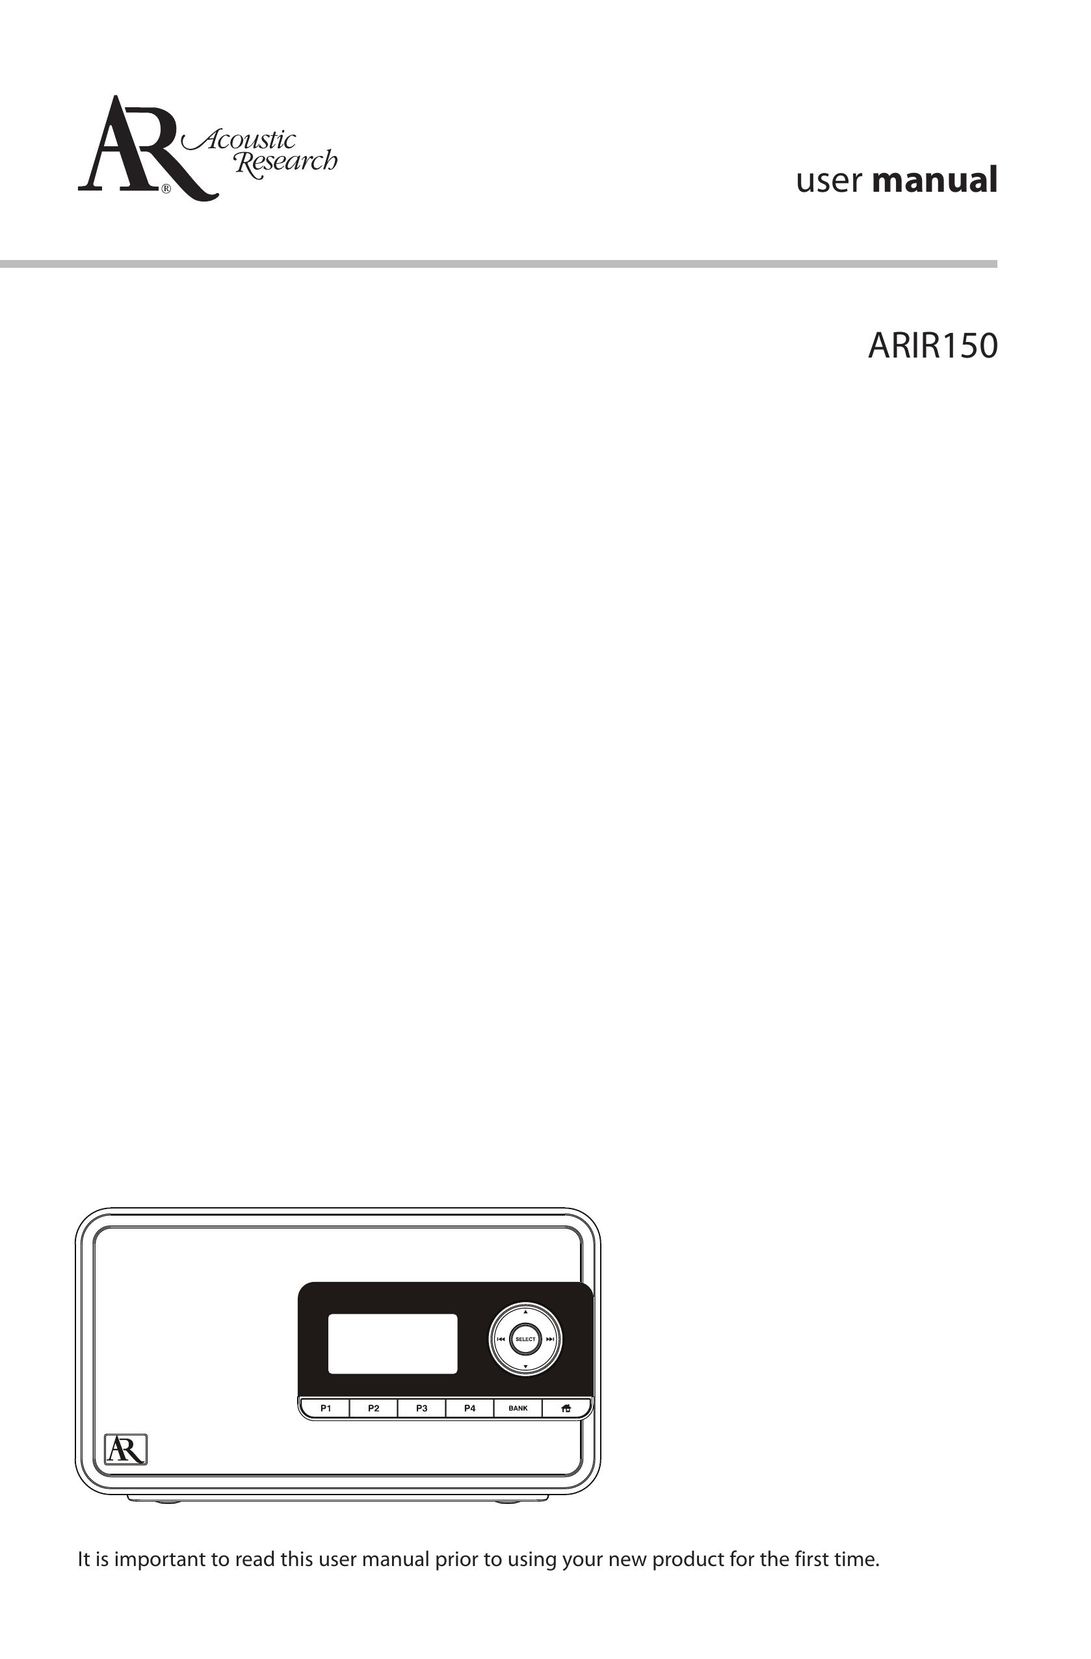 Acoustic Research ARIR150 Radio User Manual